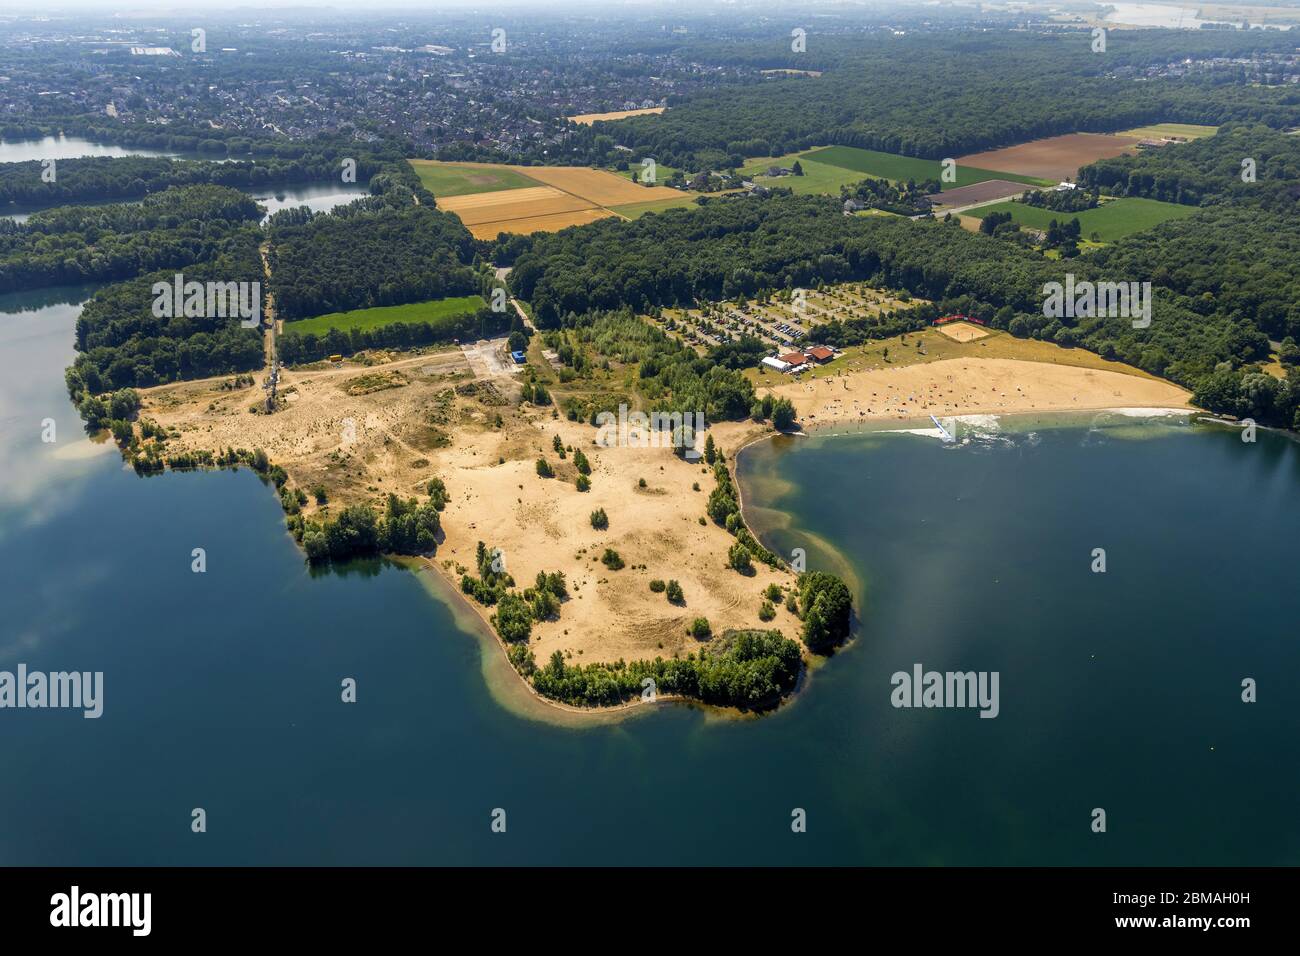 , lake Tendering and open-air swimming pool Strandbad Tenderingssee in Voerde, 06.07.2017, aerial view, Germany, North Rhine-Westphalia, Voerde (Niederrhein) Stock Photo